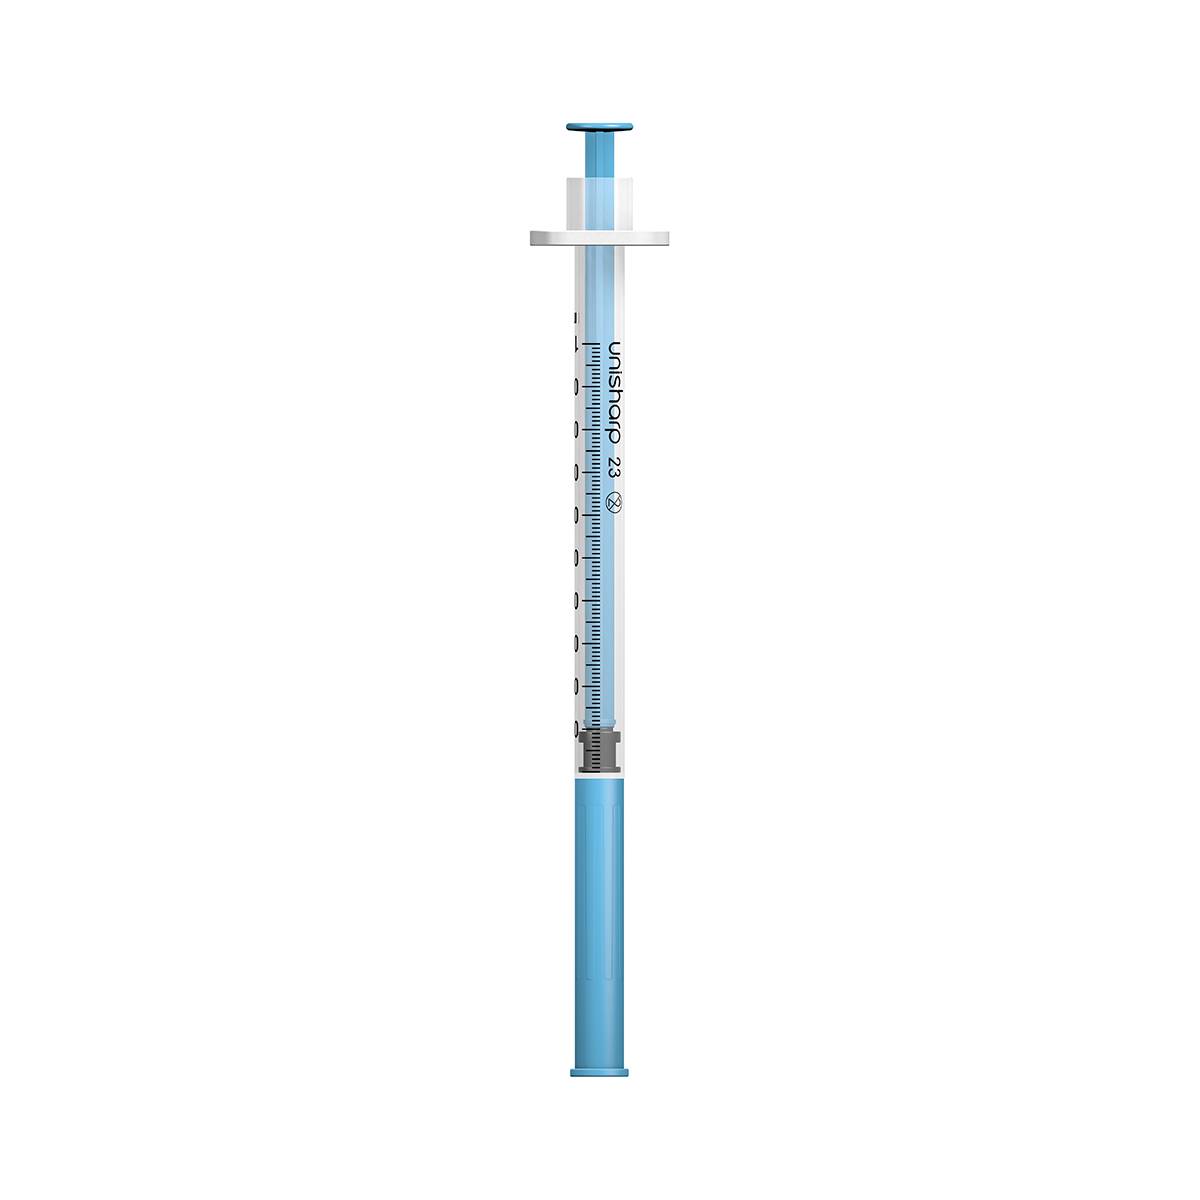 1ml 23G 25mm 1 inch Unisharp fixed blue needle syringe u100 - UKMEDI